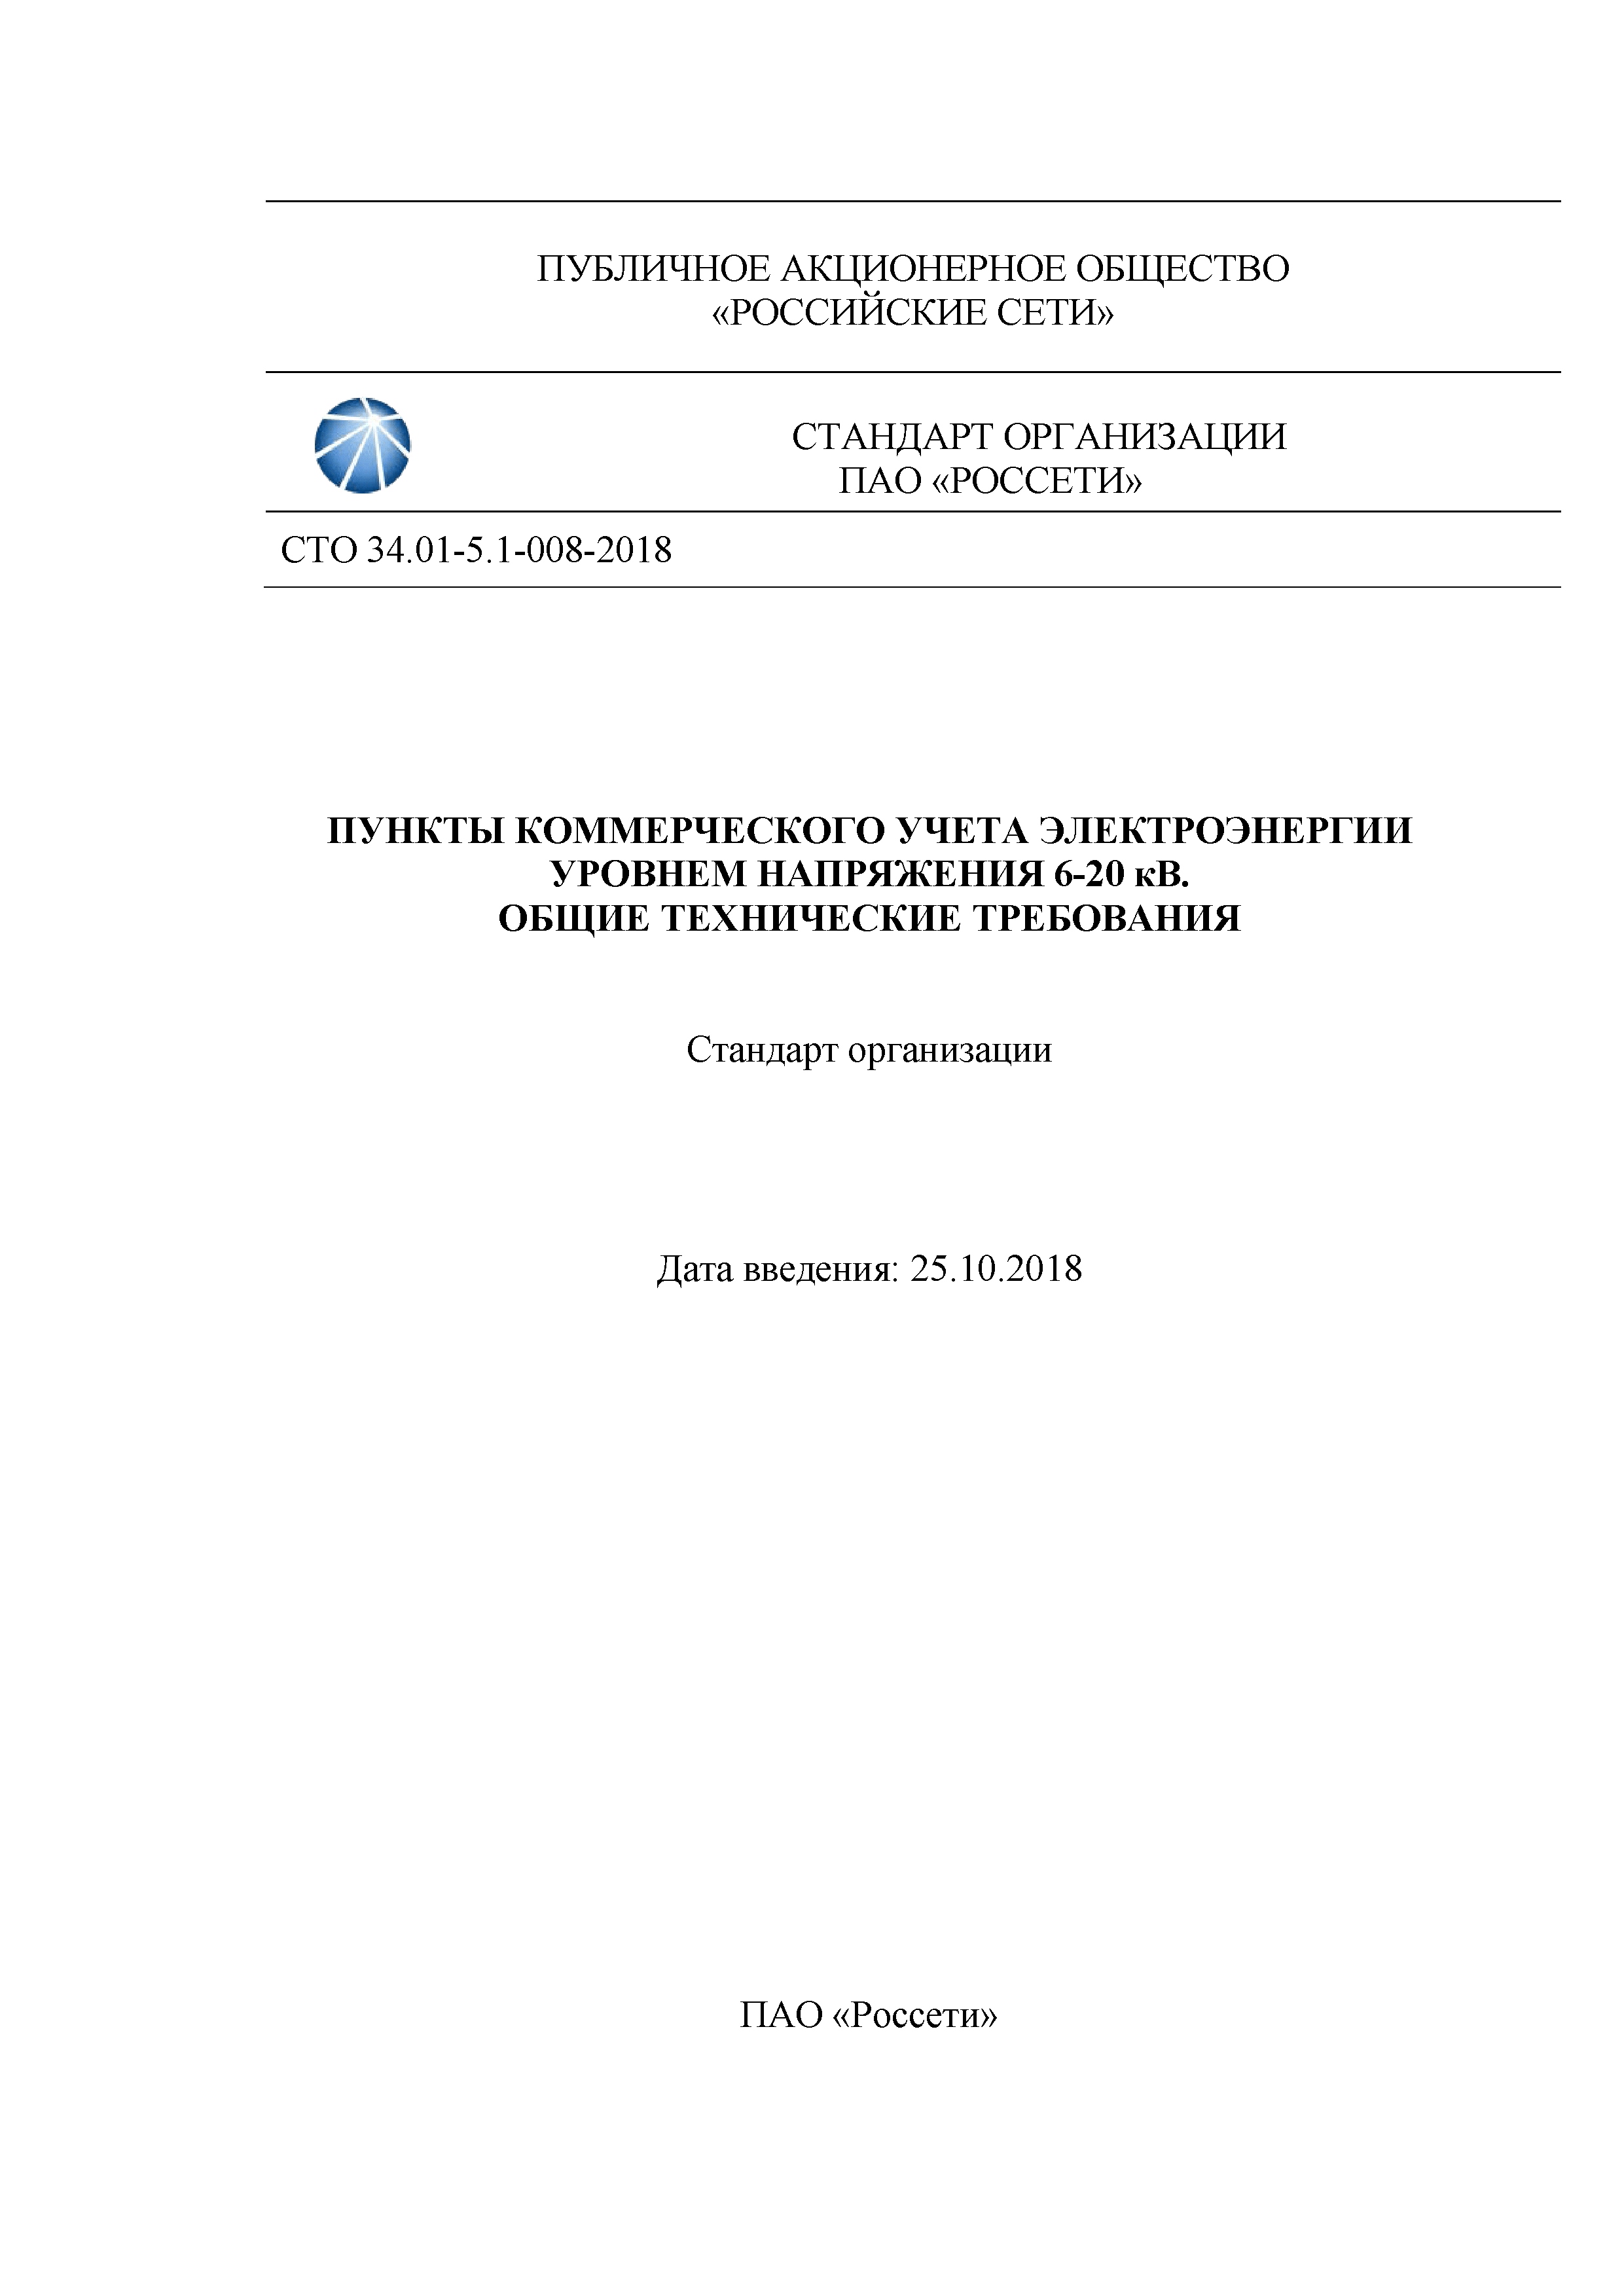 СТО 34.01-5.1-008-2018